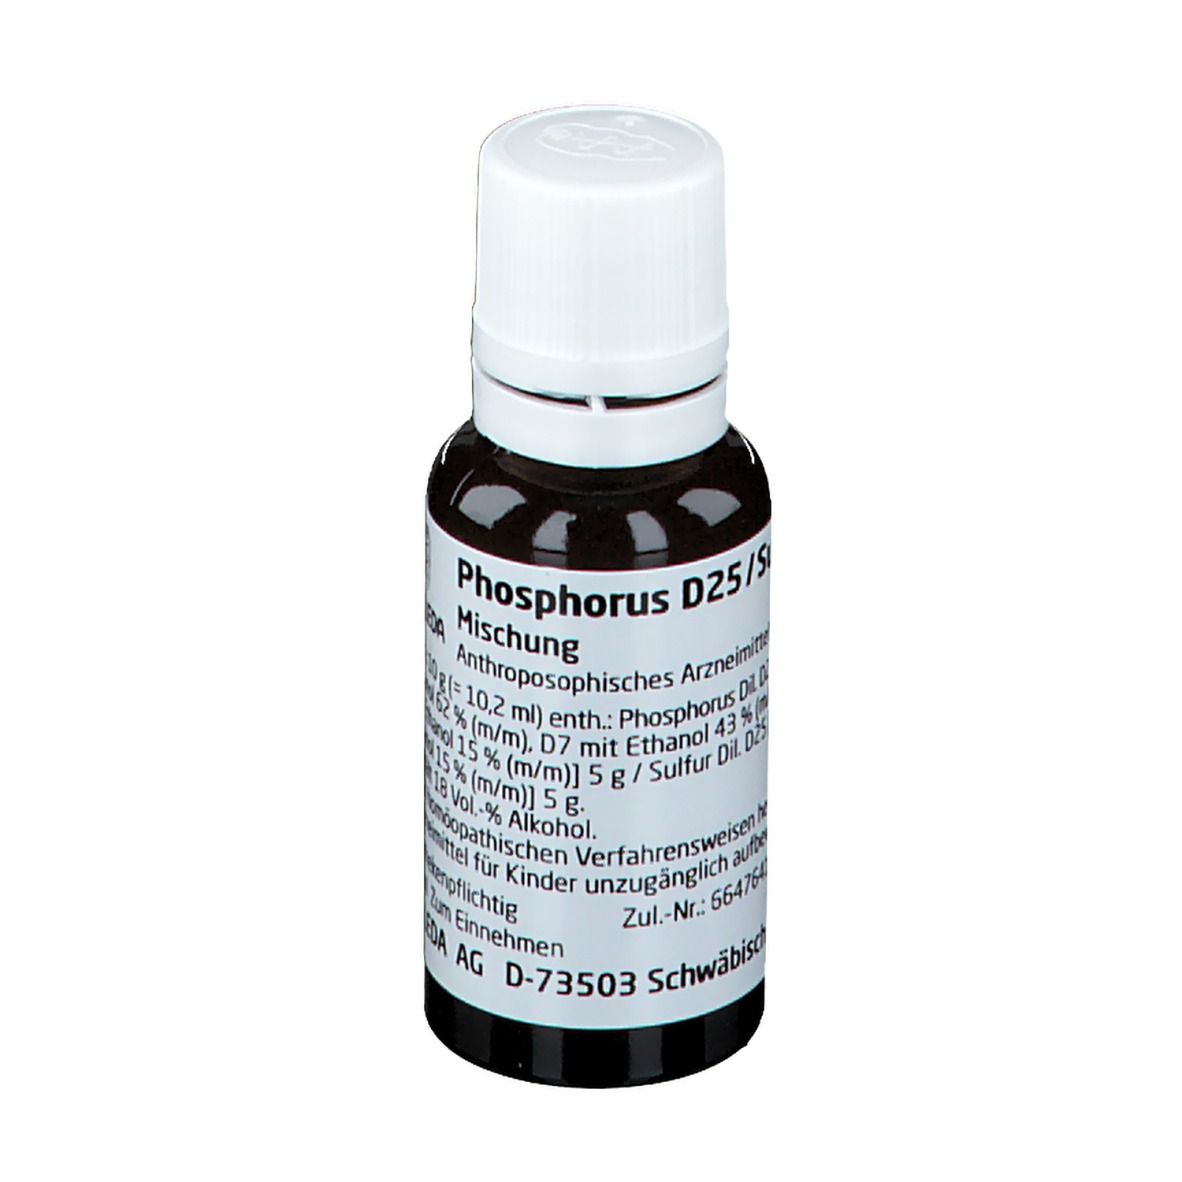 Phosphorus D25 / Sulfur D25 aa